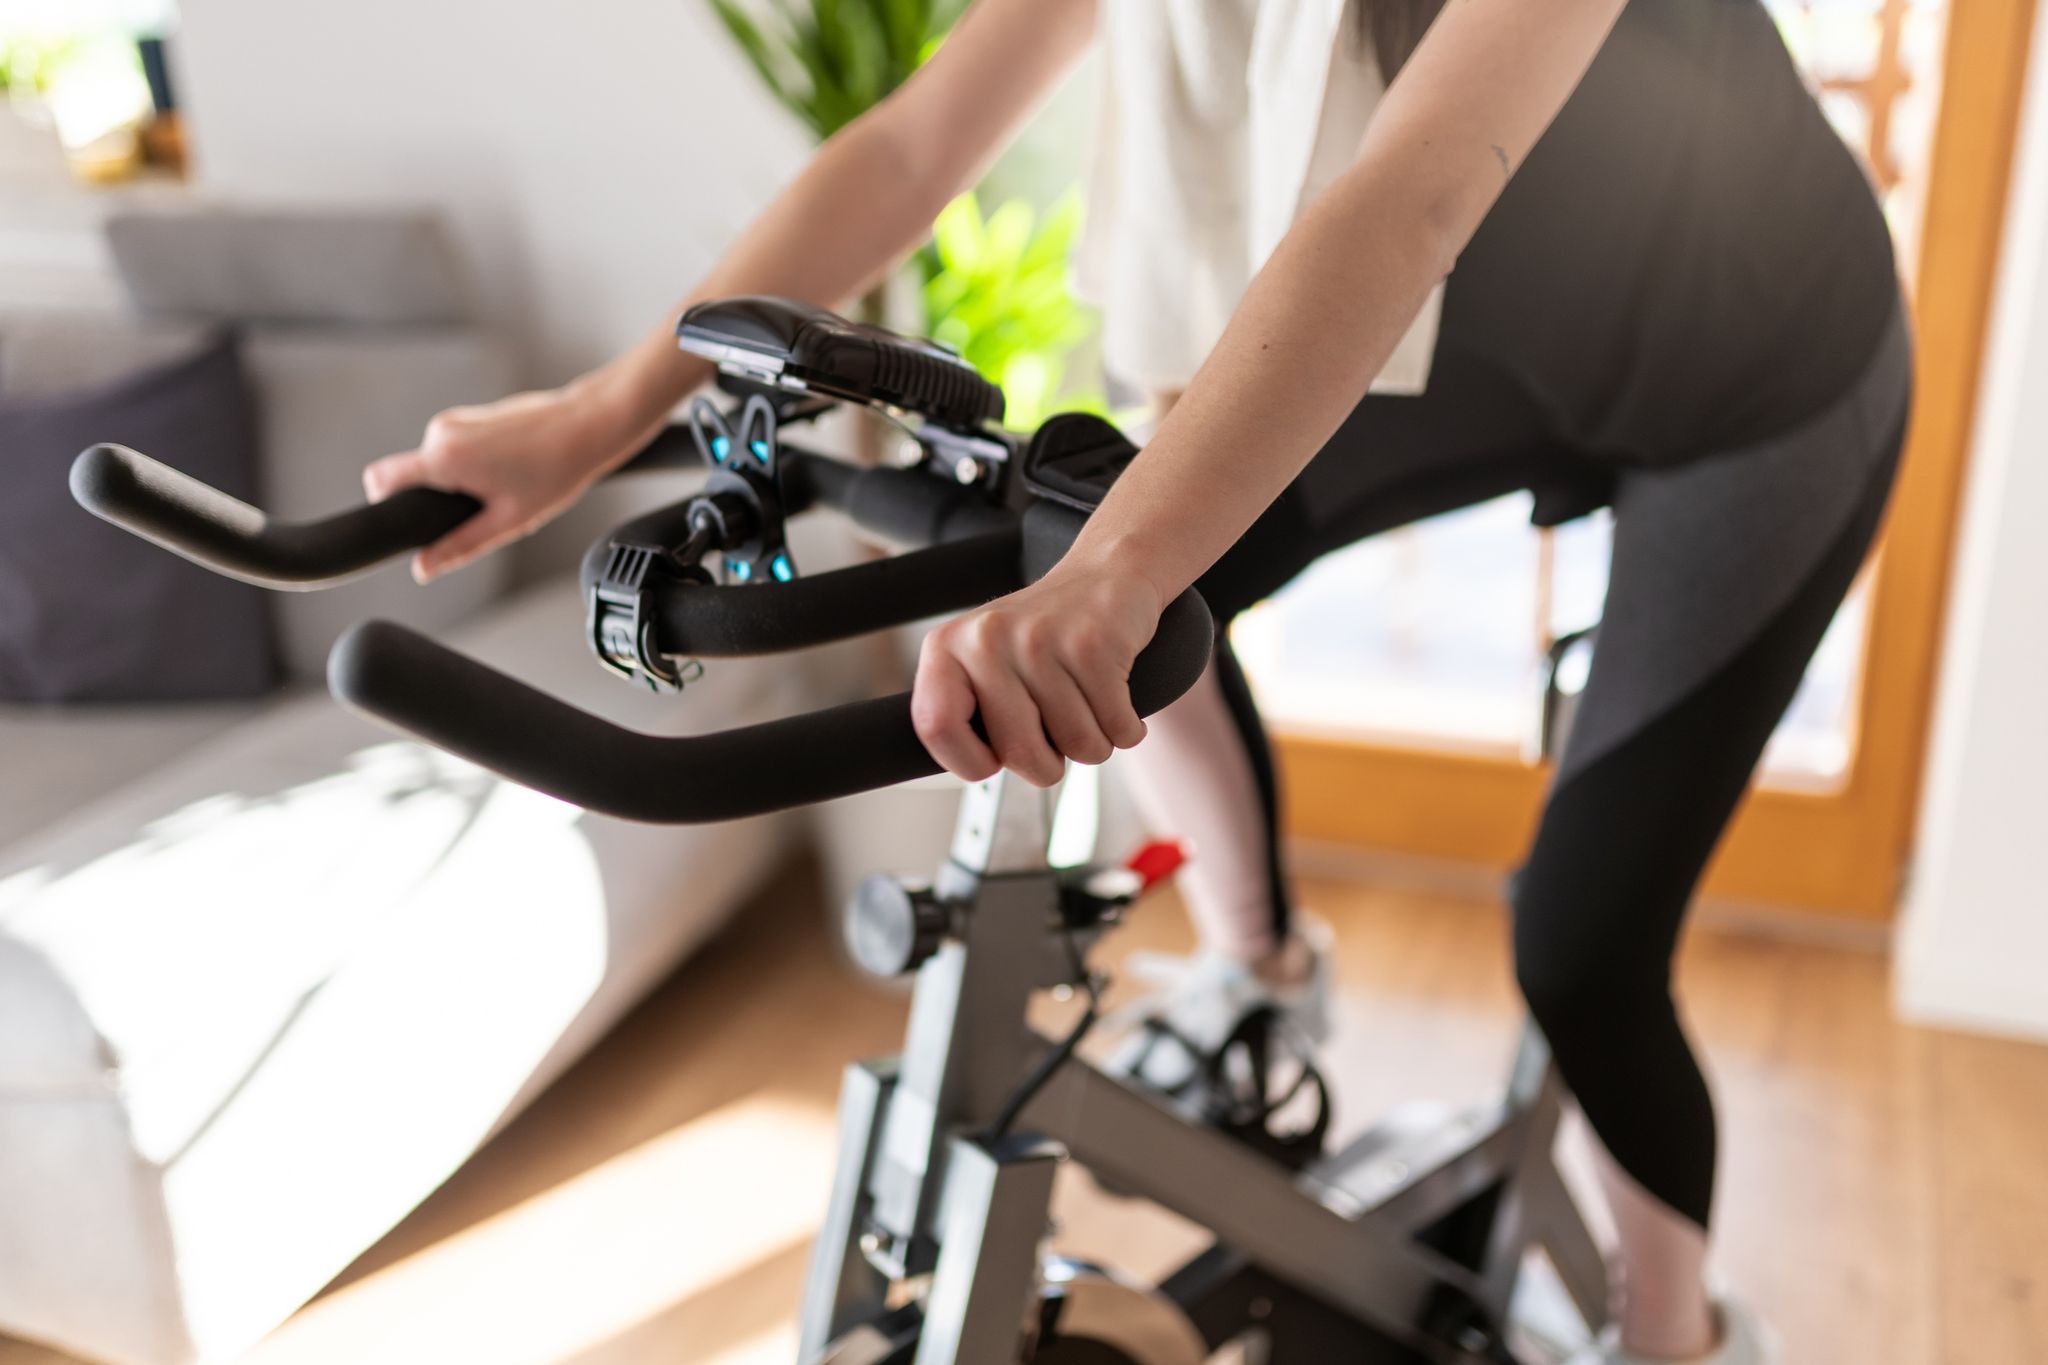 Qué es mejor para hacer ejercicio en casa, bicicleta estática o elíptica? -  Quora